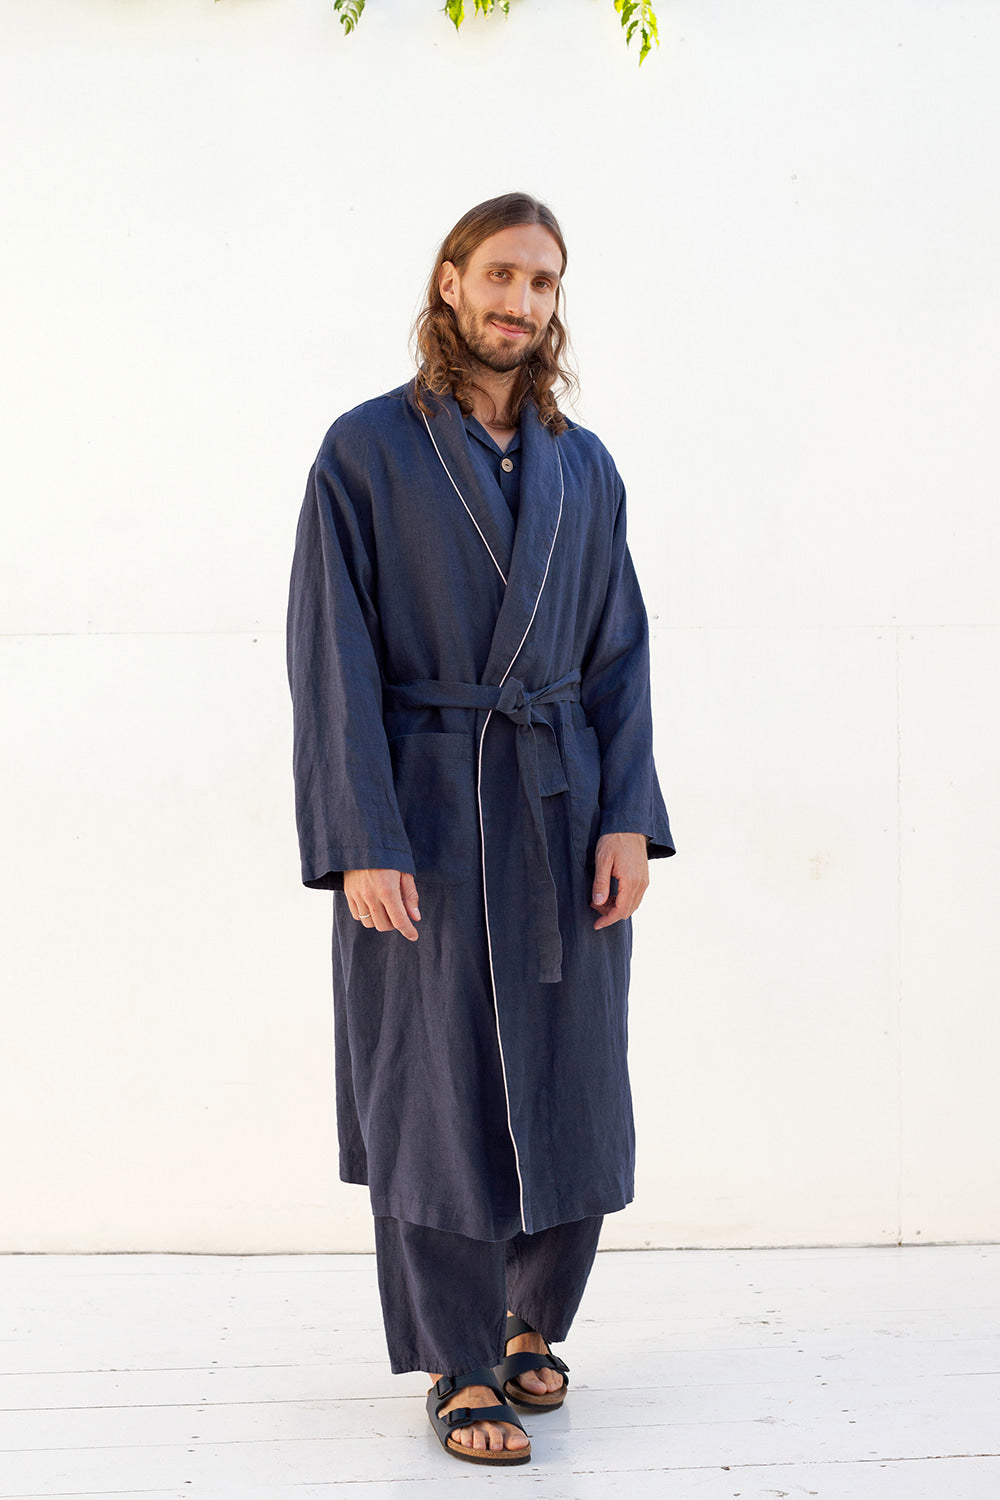 DANDELION men's long linen robe